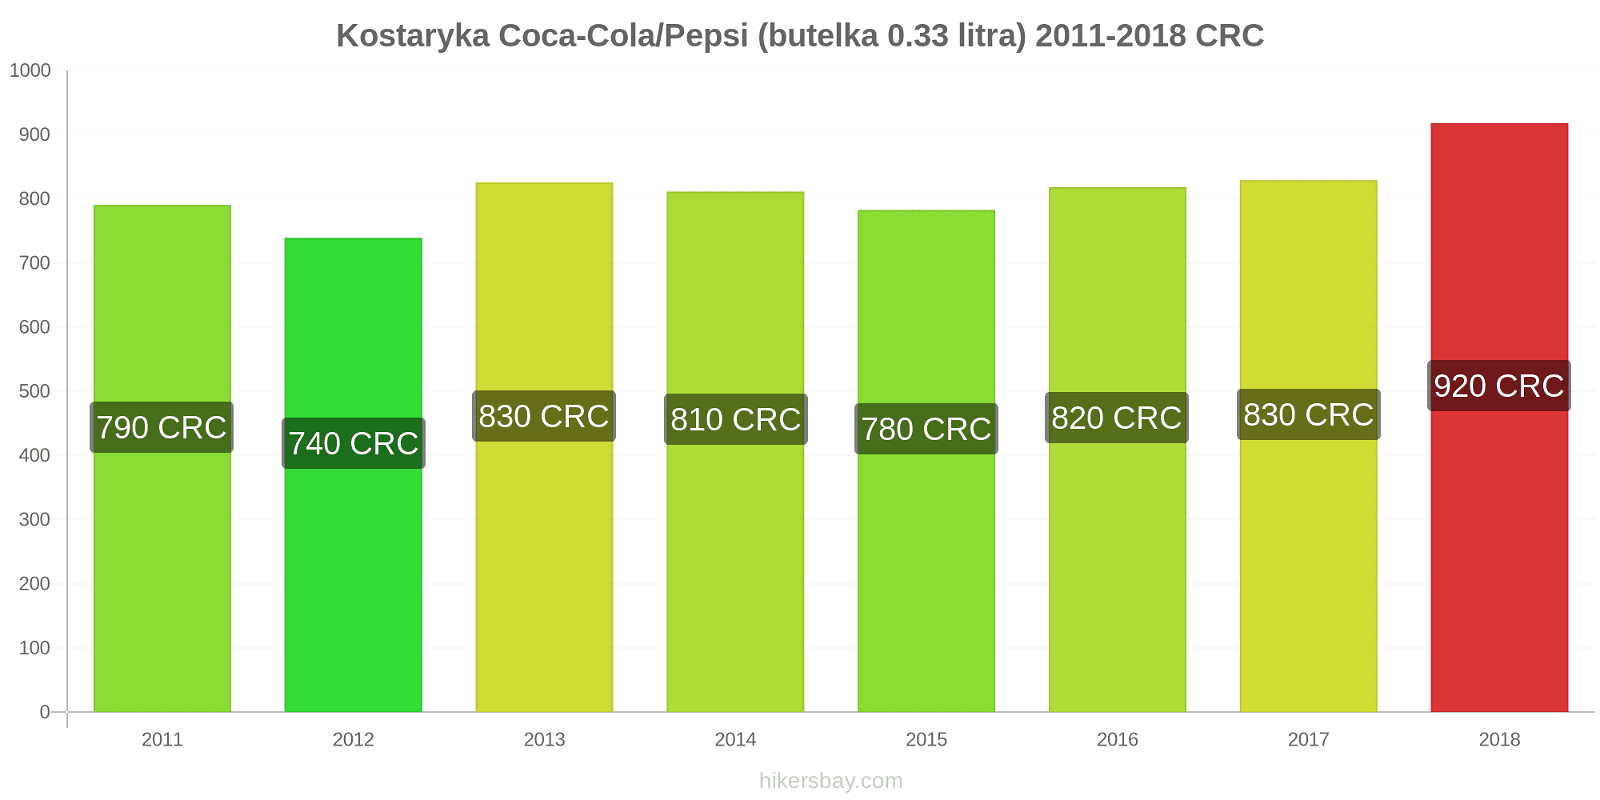 Kostaryka zmiany cen Coca-Cola/Pepsi (butelka 0.33 litra) hikersbay.com